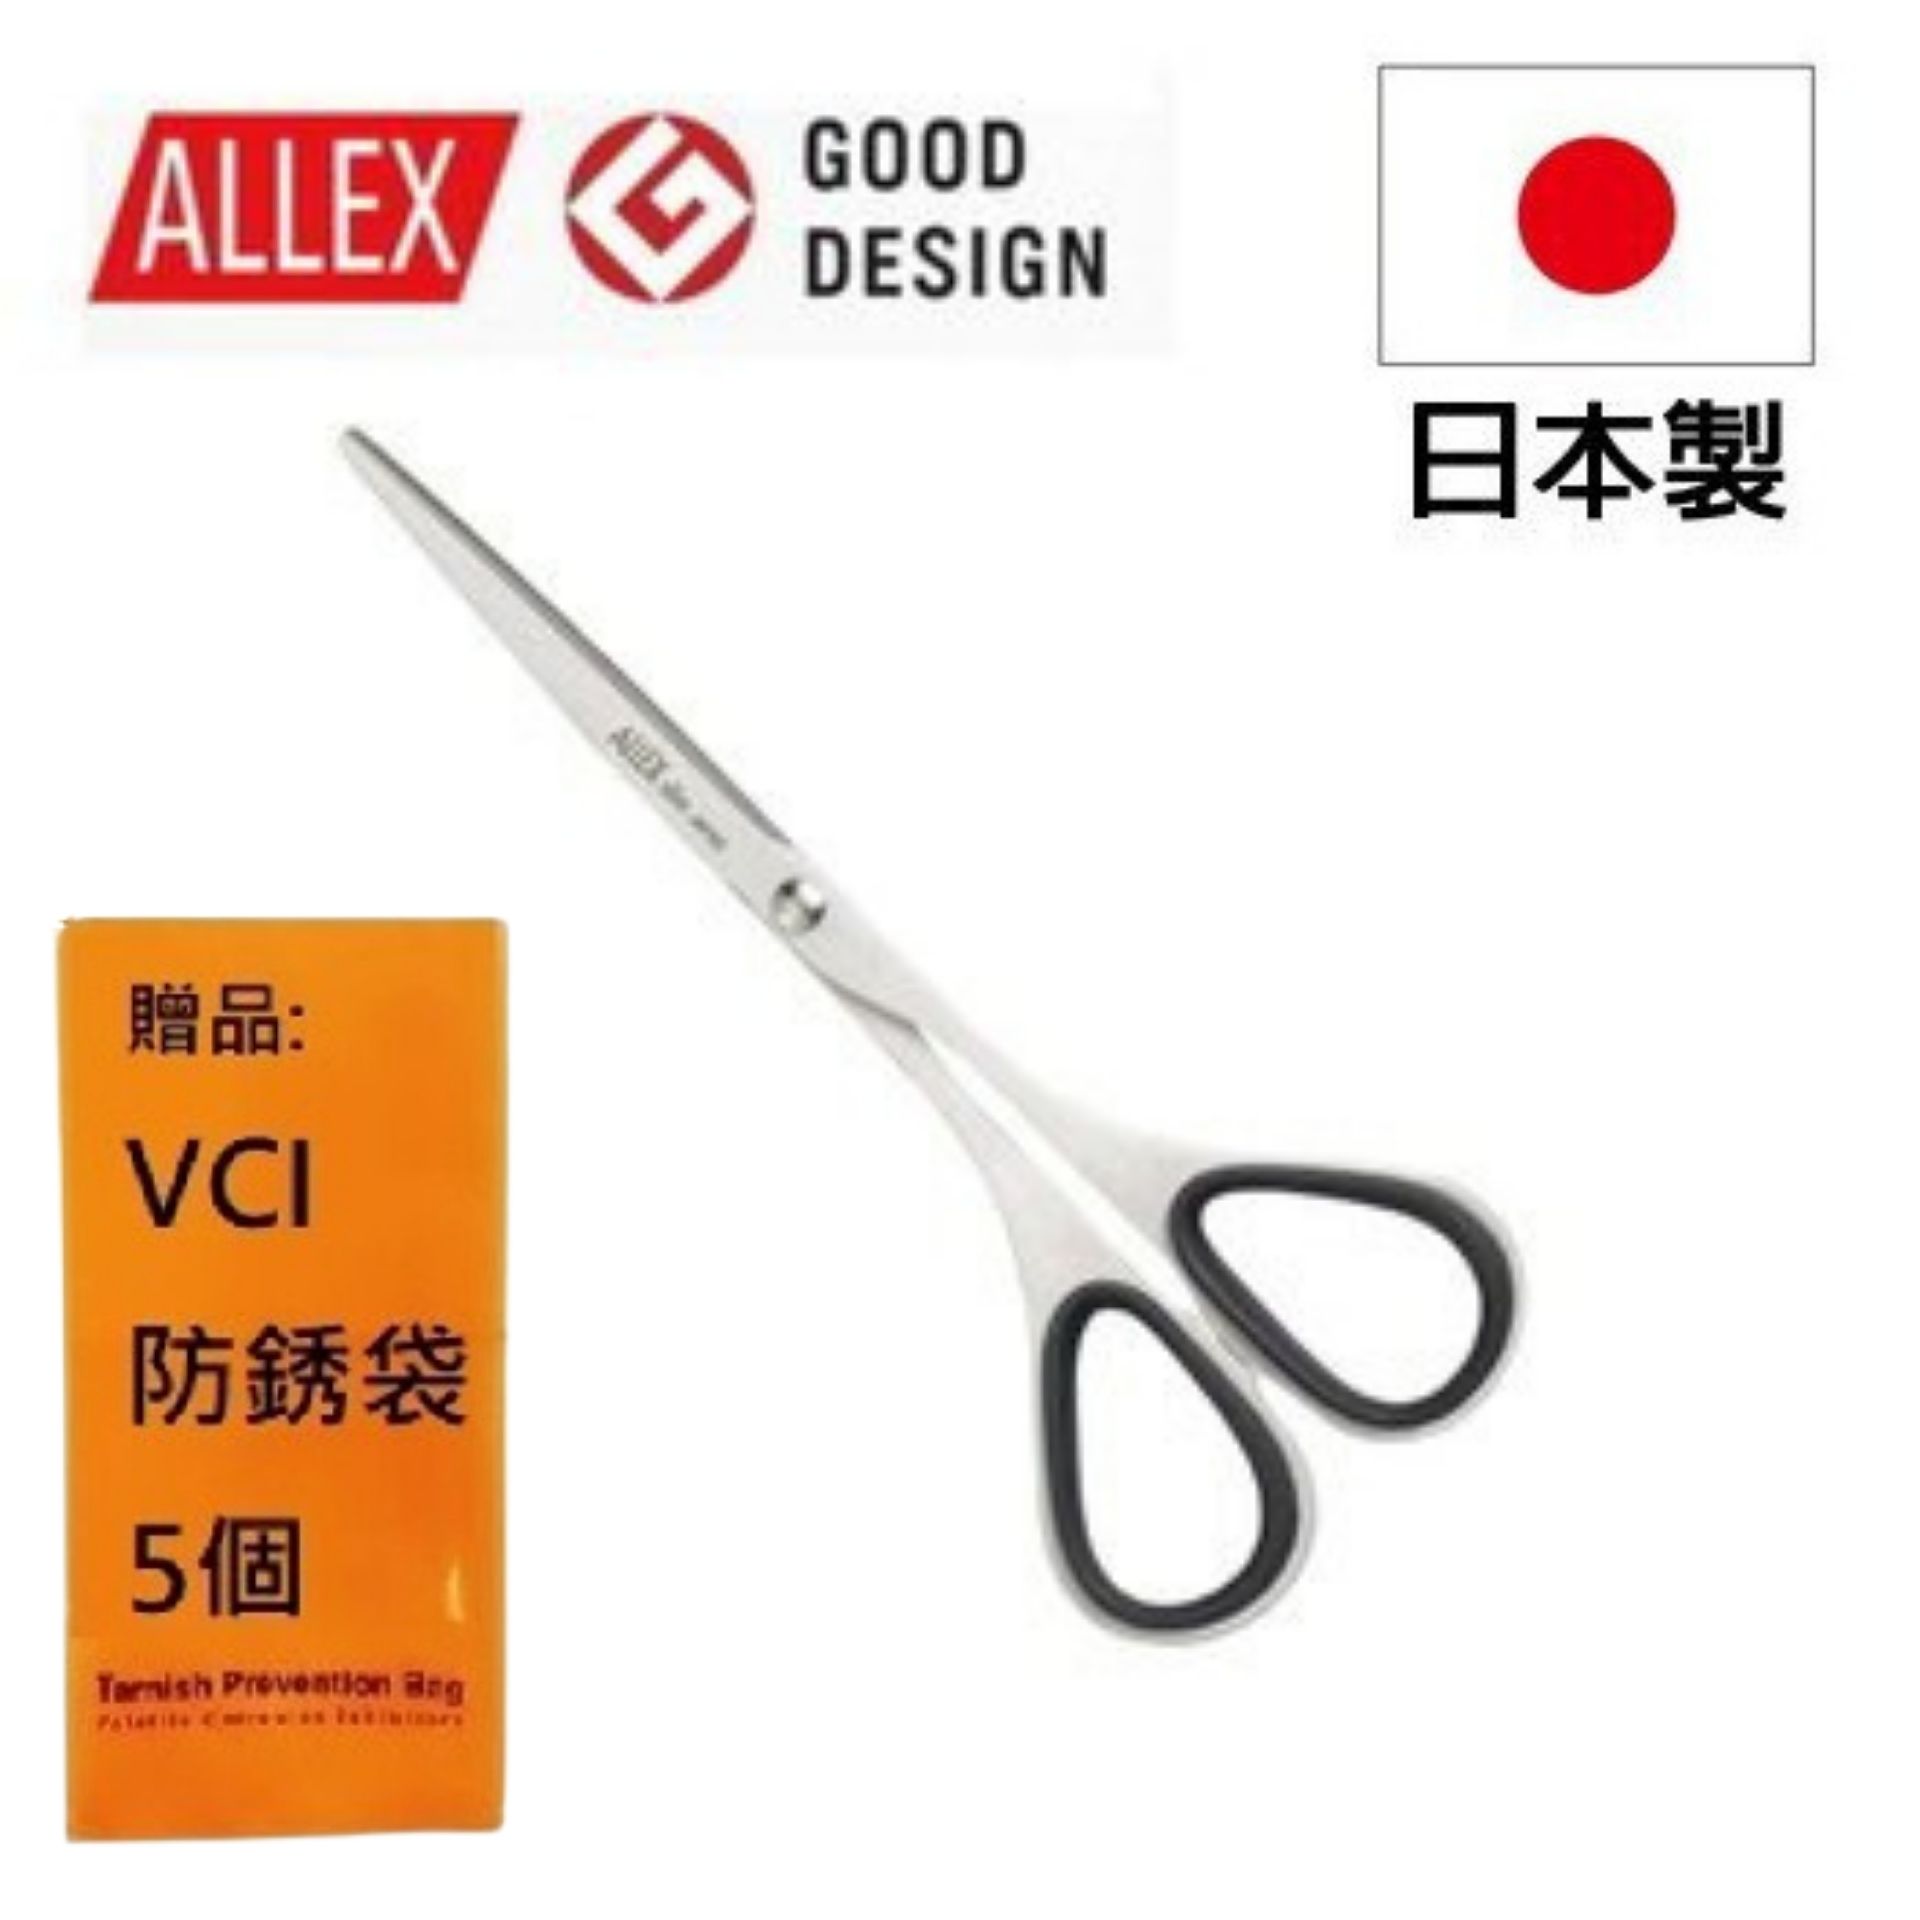 【ALLEX】Slim極細長刃剪刀(中)120mm-黑 使用不易生銹的優質不銹鋼材，材質堅韌